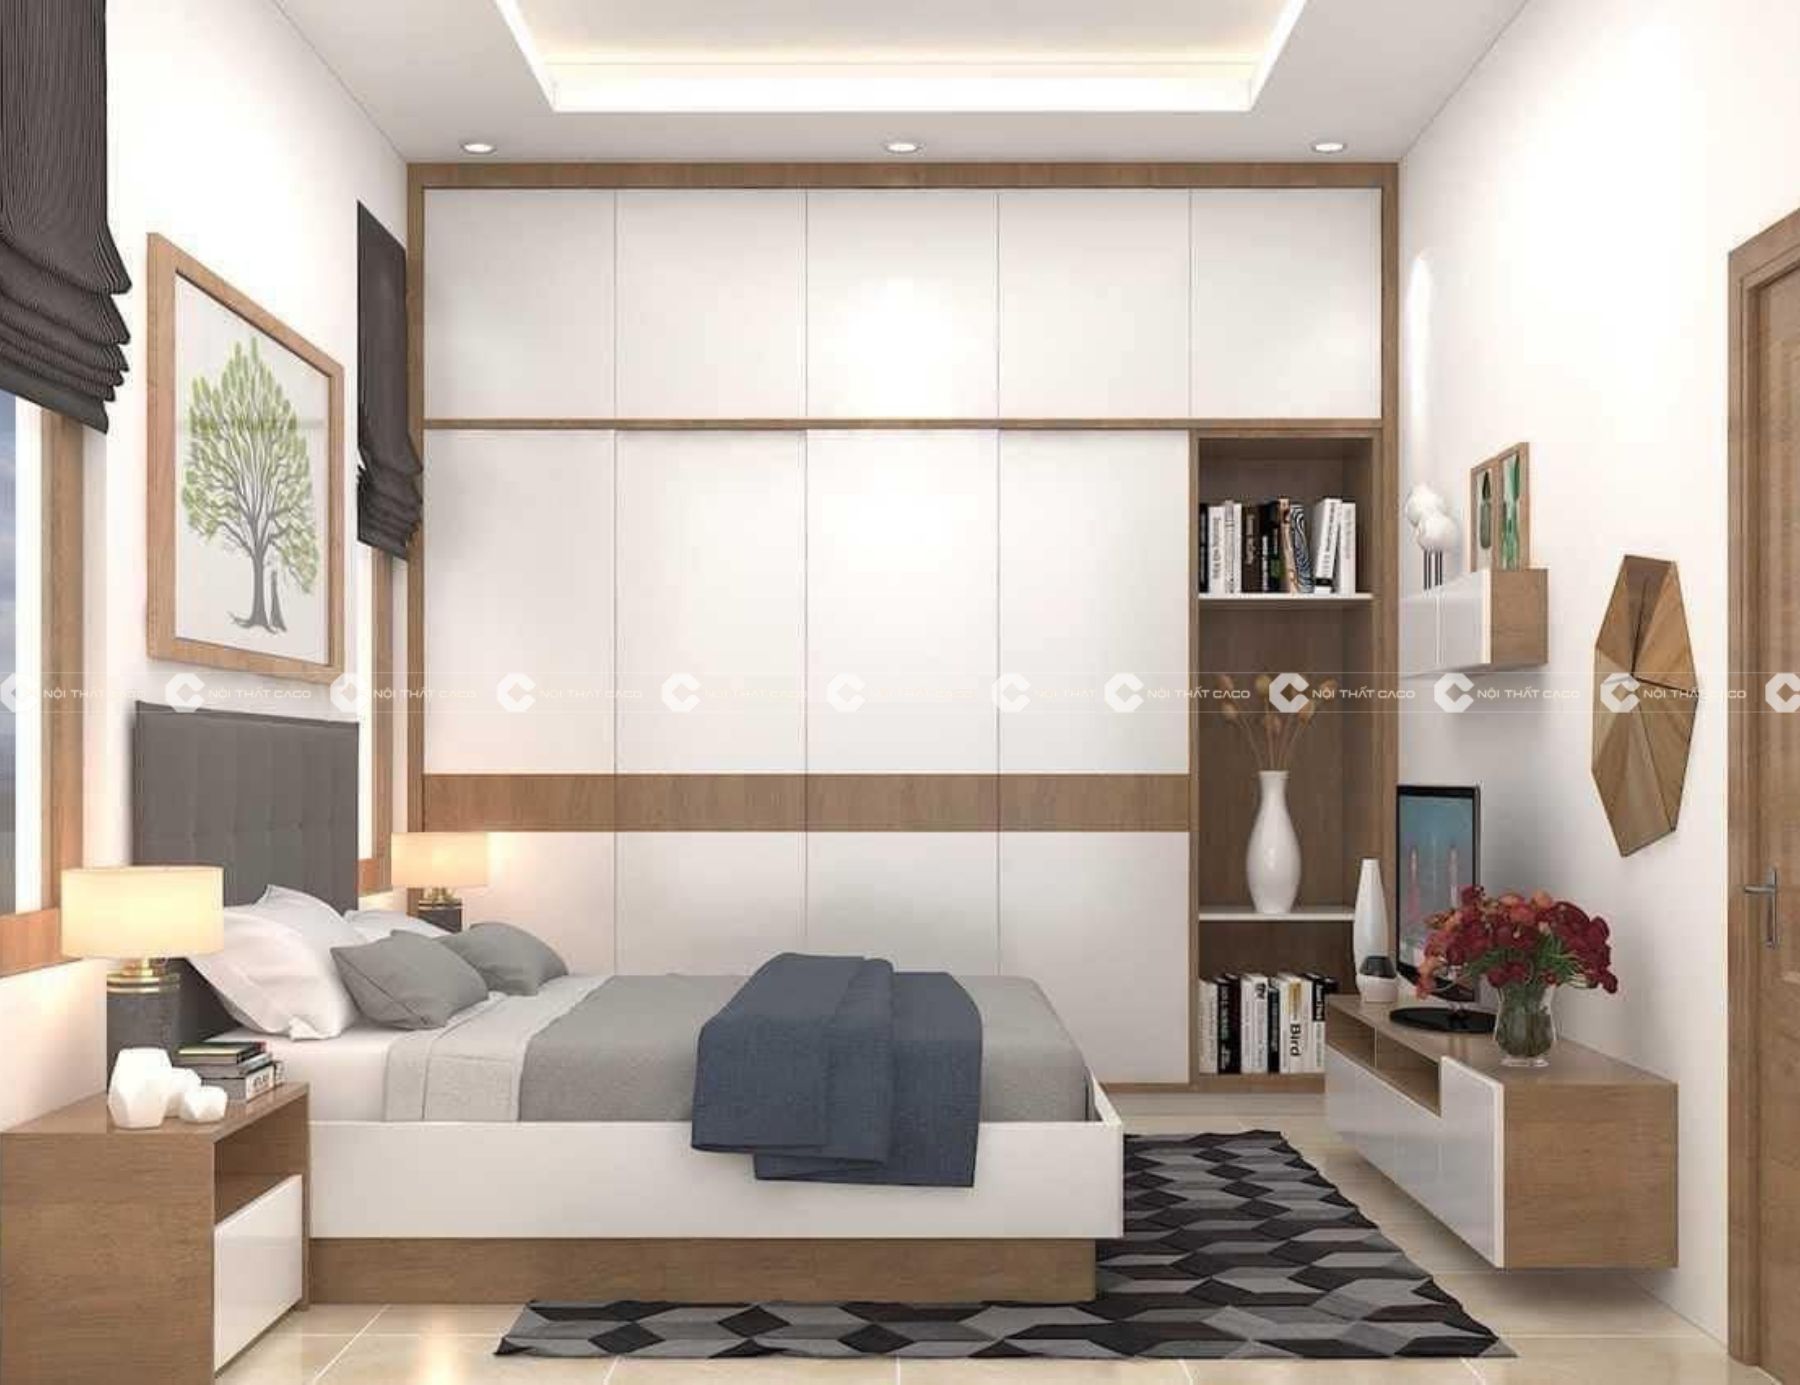 Thiết kế thi công nội thất phòng ngủ đẹp theo phong cách hiện đại tại Quận 7 9